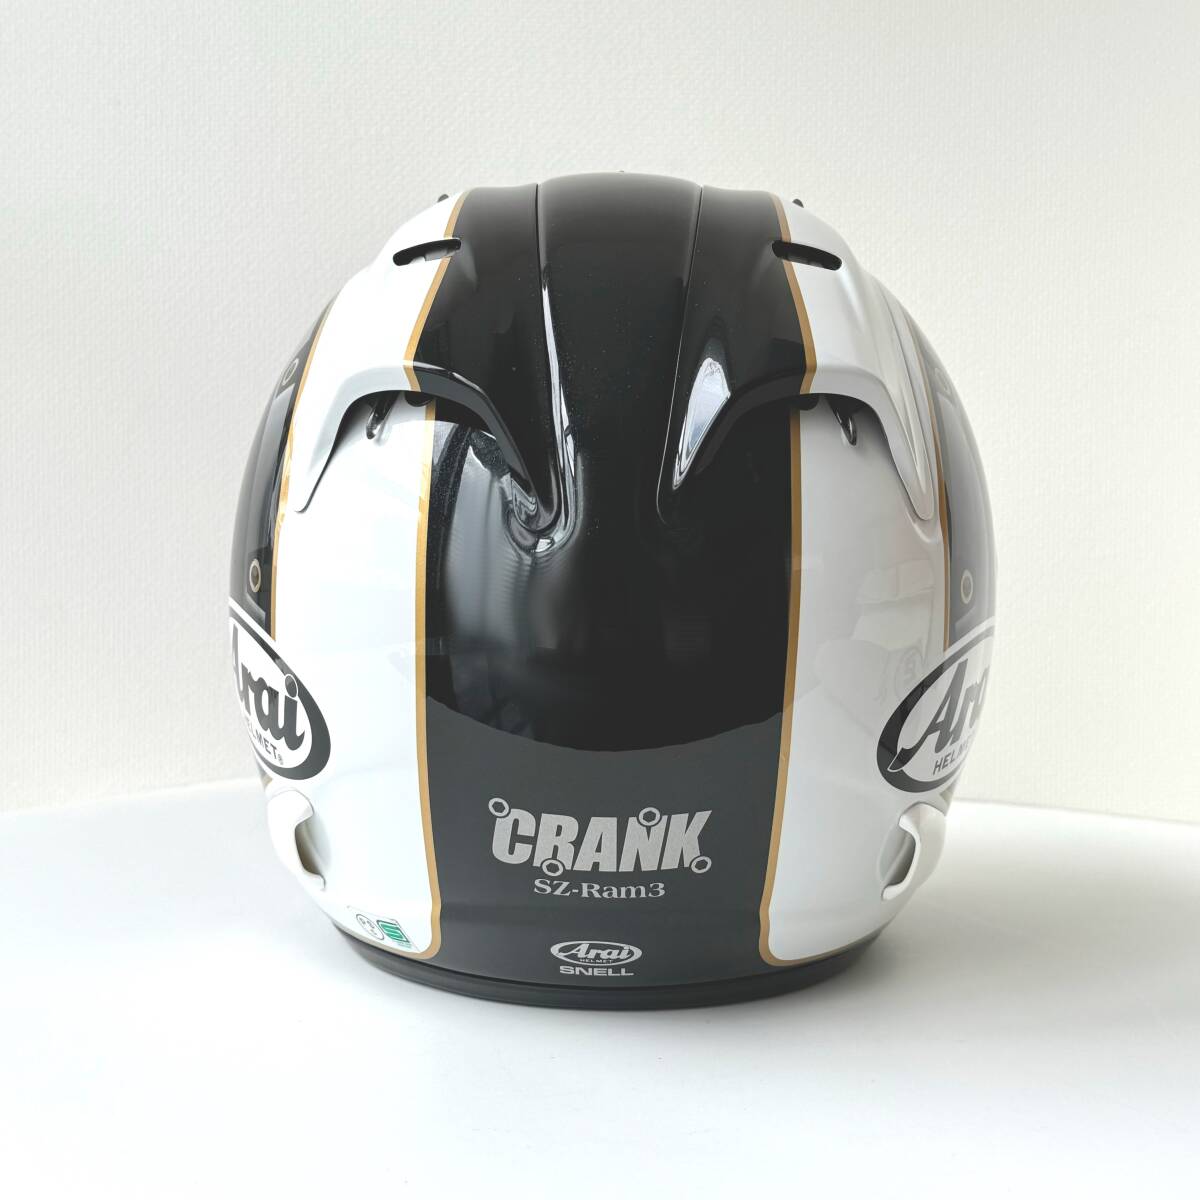 ◆ アライ Arai ヘルメット CRANK クランク SZ-Ram3 57-58cm 保存袋付き ジェットヘルメット ブラック ホワイト ヤマハ YAMAHA バイク用品_画像3